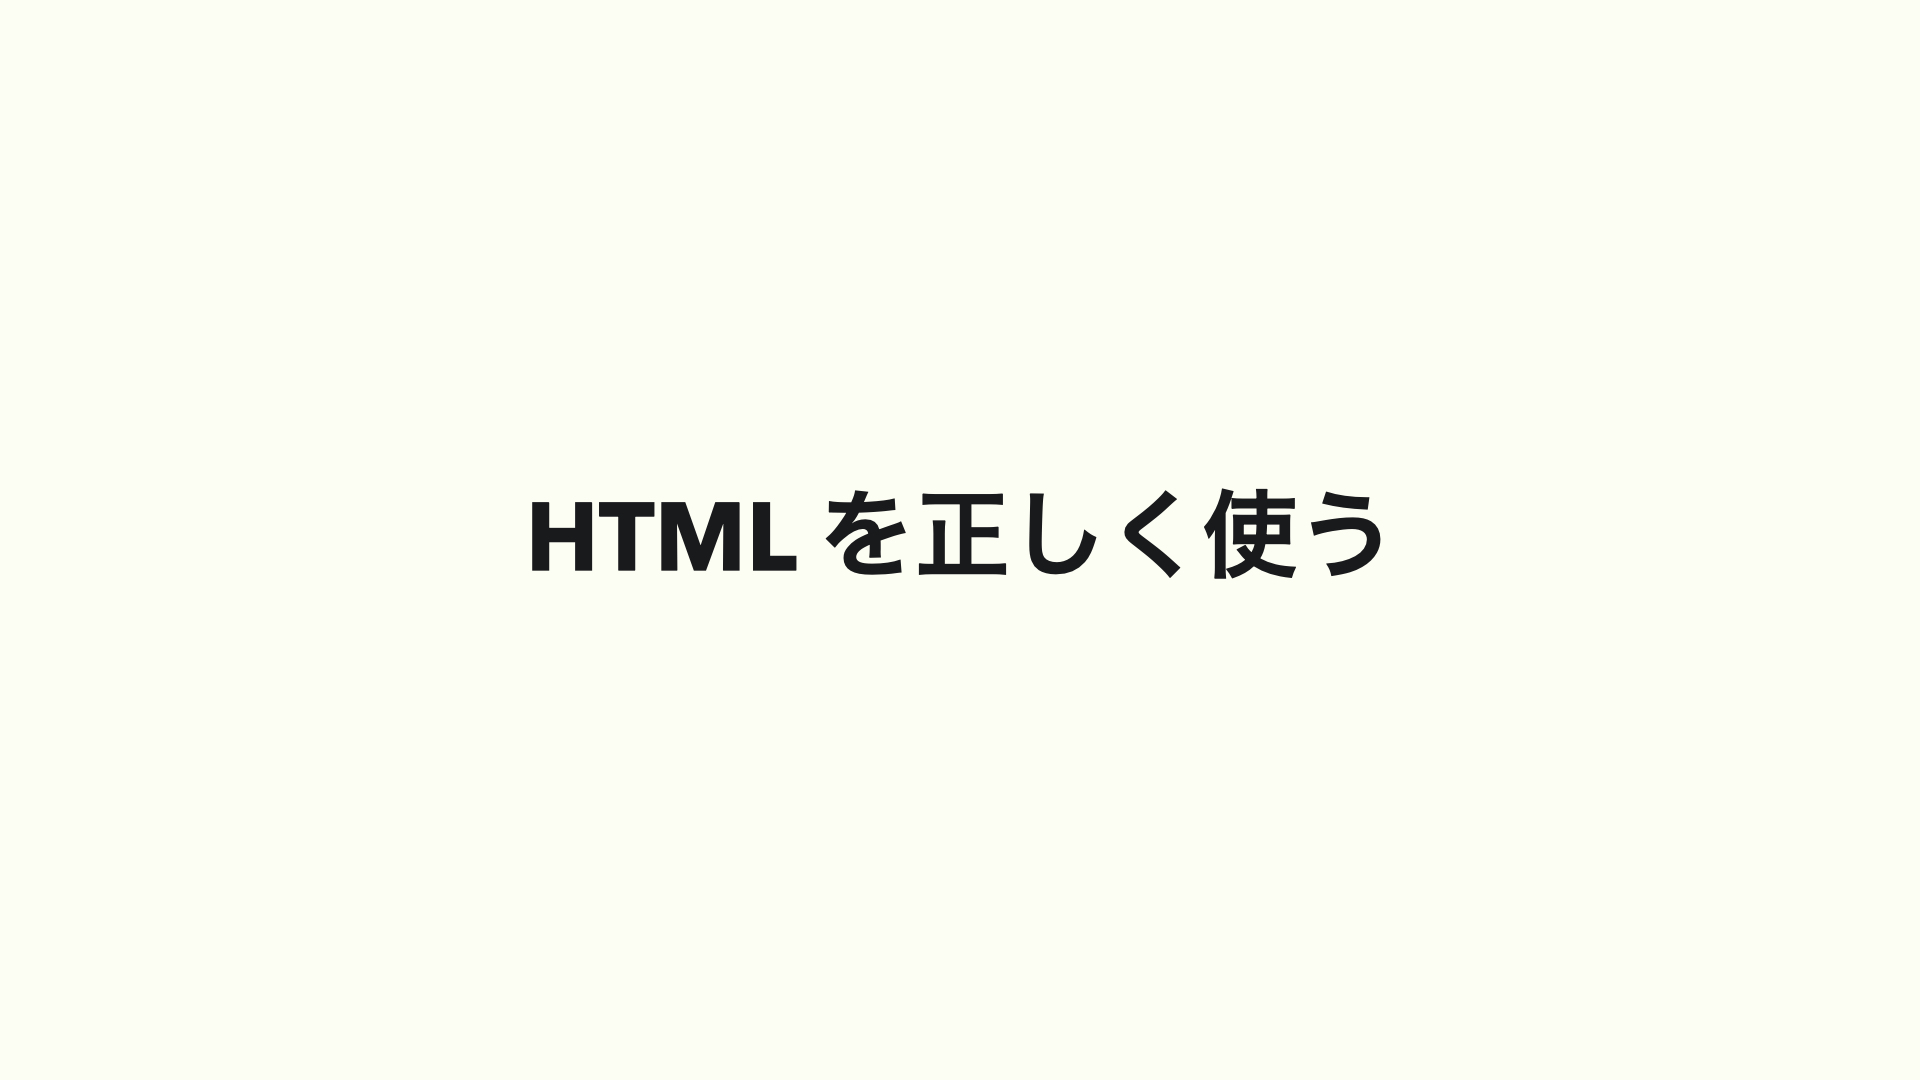 HTML を正しく使う